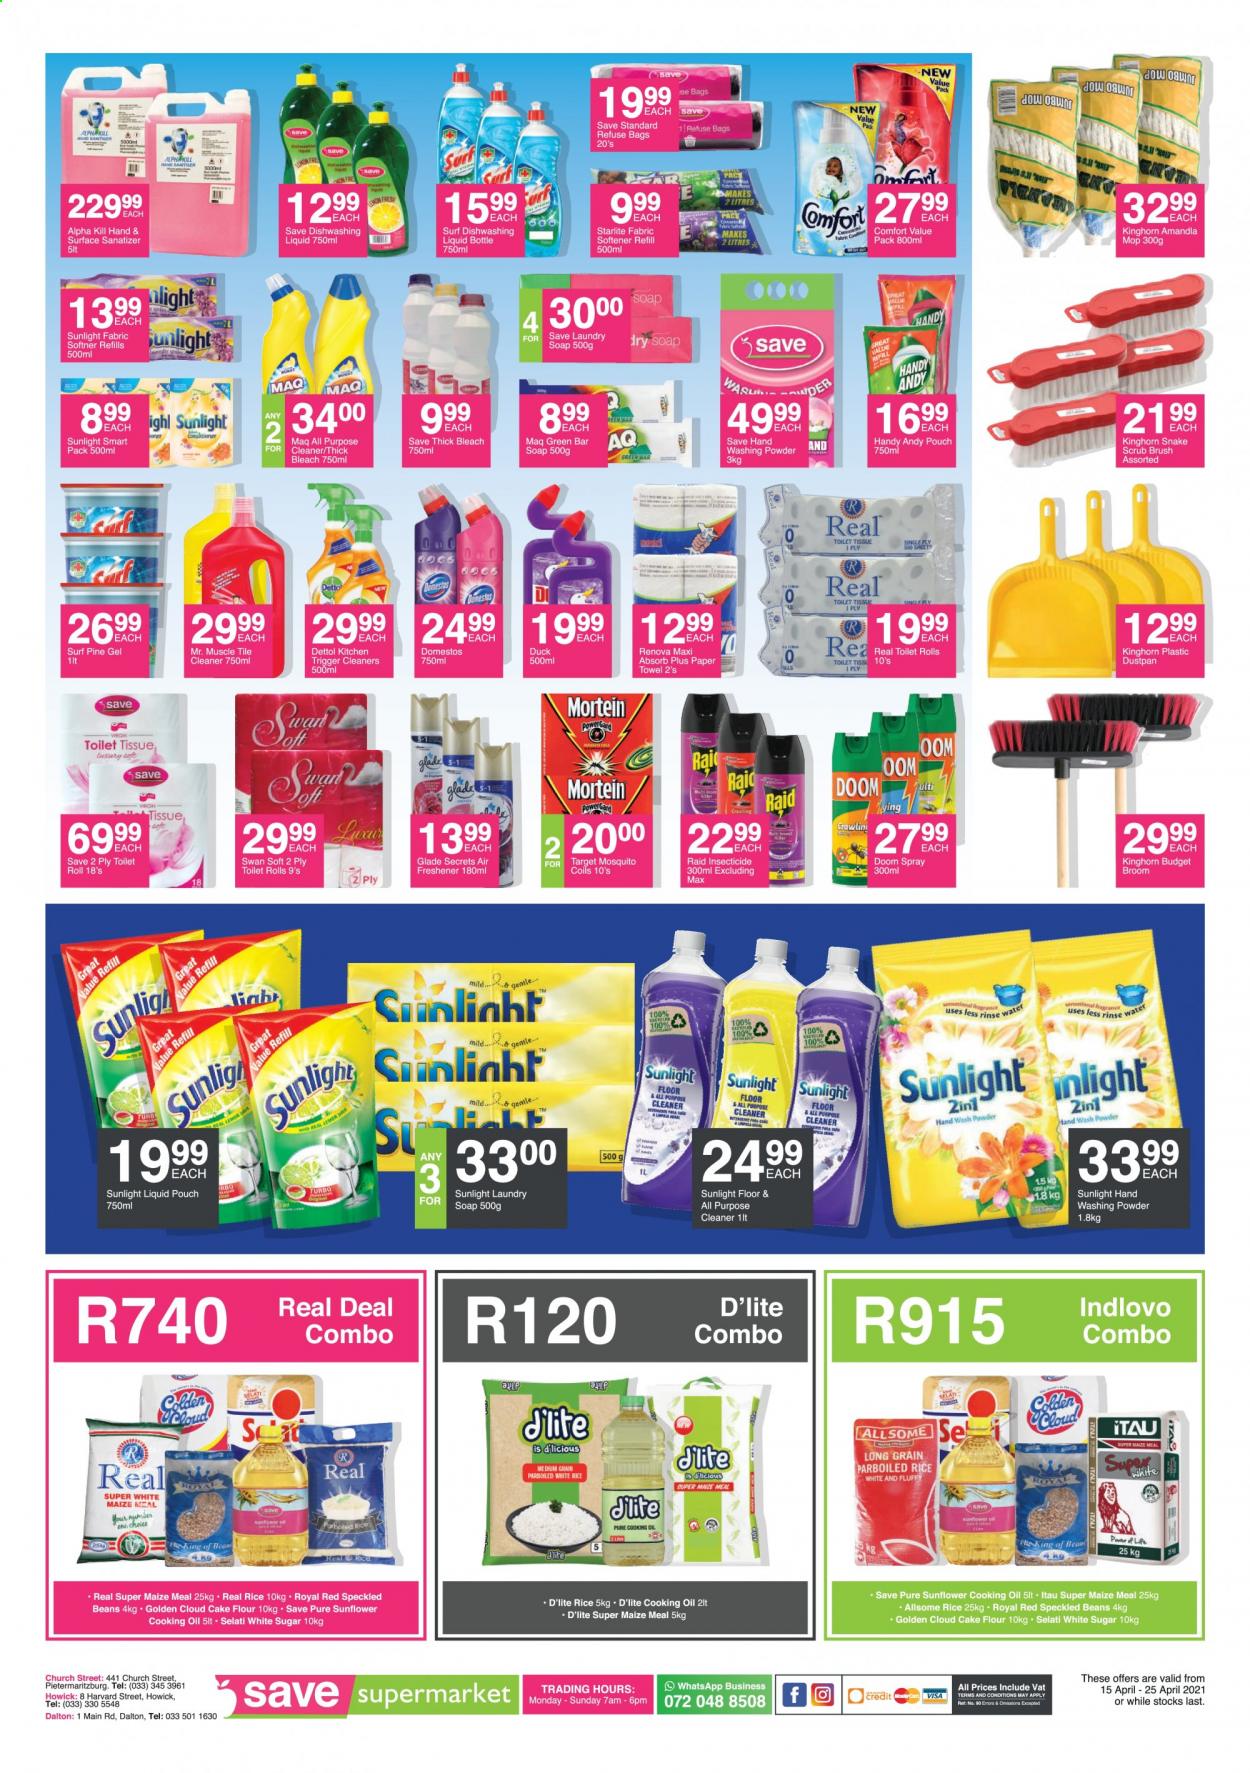 Save supermarket specials - 04.15.2021 - 04.25.2021. 